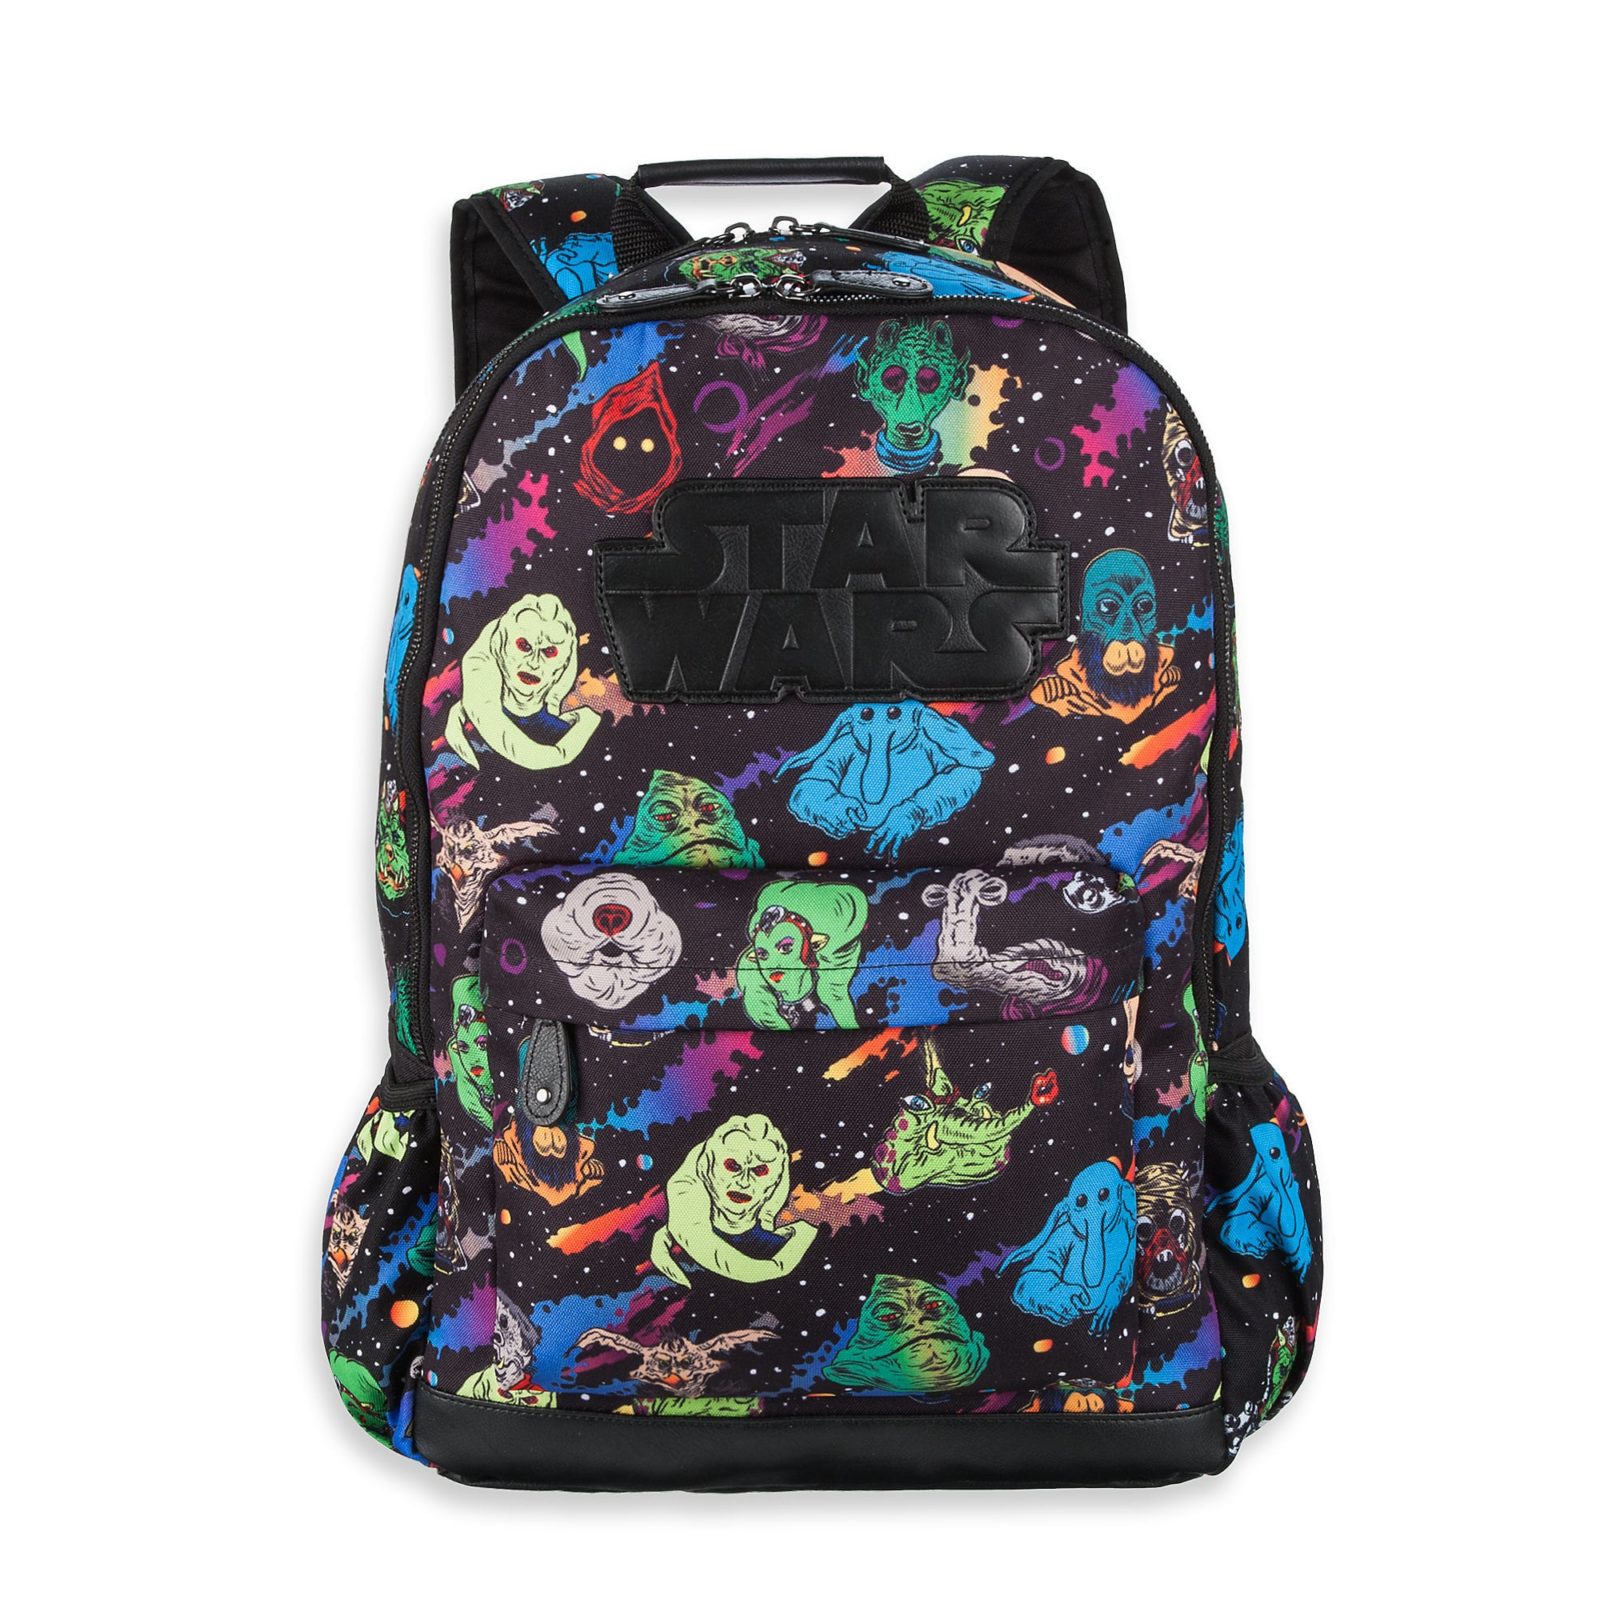 Star Wars Character Print Backpack at Shop Disney